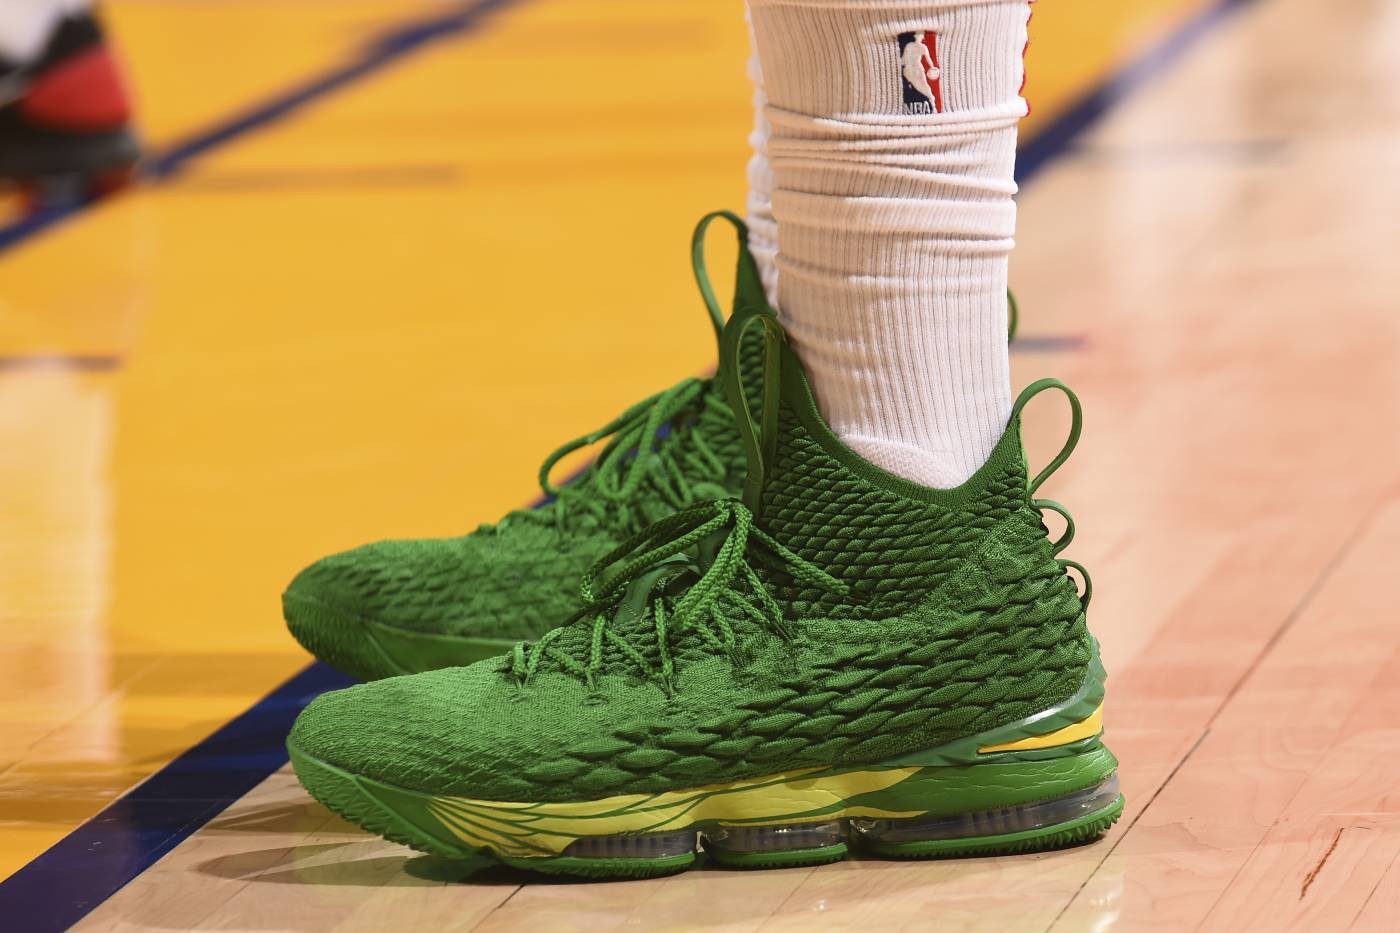 Chi tiết và đầy đủ các mẫu giày khủng của Thánh giày P.J. Tucker đã mang tại NBA Playoffs 2018 - Ảnh 25.